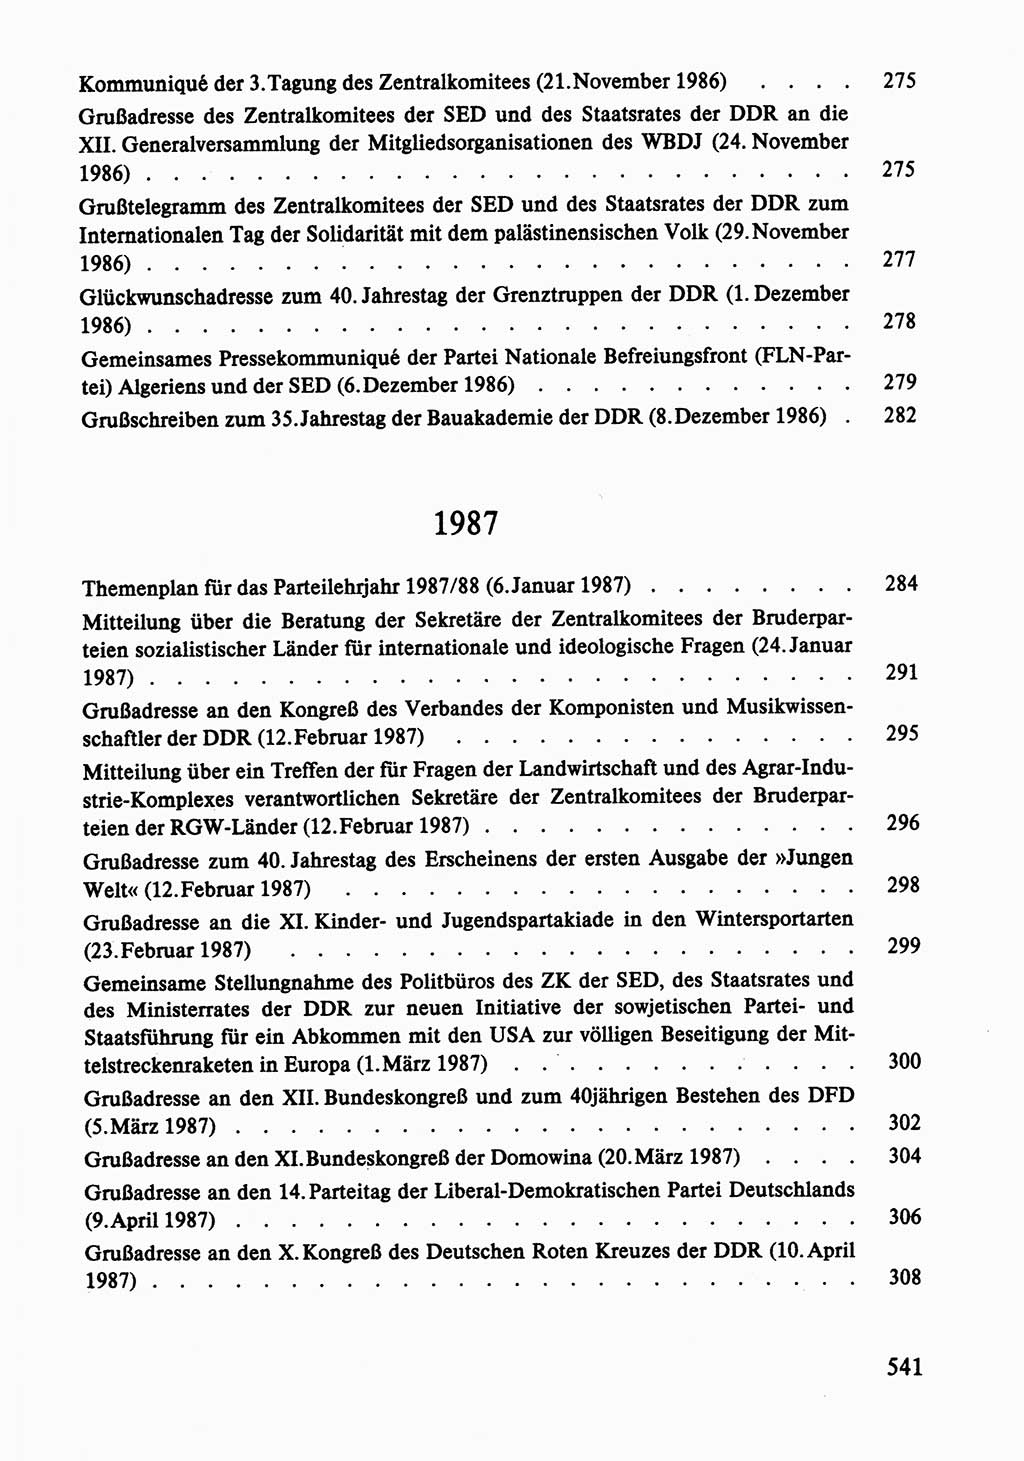 Dokumente der Sozialistischen Einheitspartei Deutschlands (SED) [Deutsche Demokratische Republik (DDR)] 1986-1987, Seite 541 (Dok. SED DDR 1986-1987, S. 541)